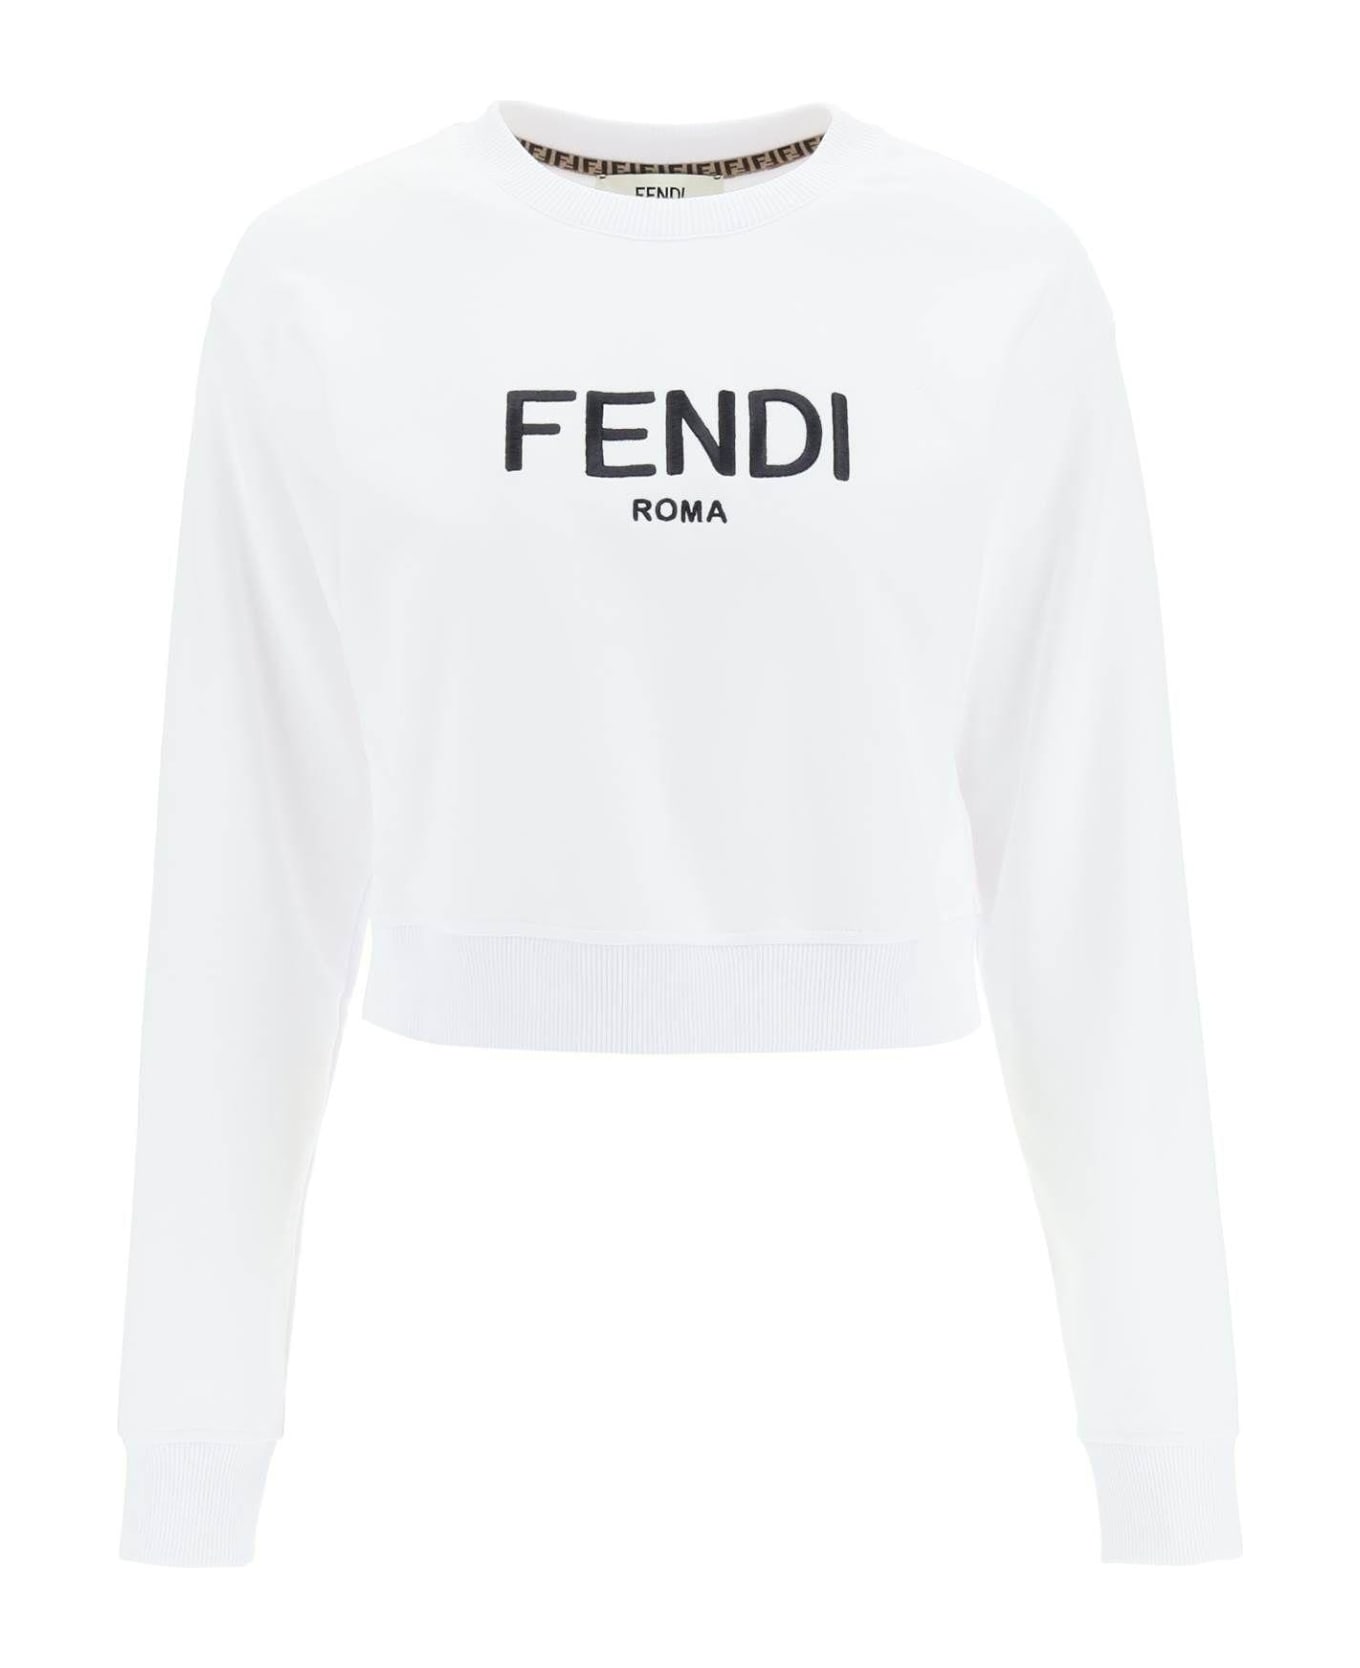 Fendi Roma Embroidered Balmain - WHITE